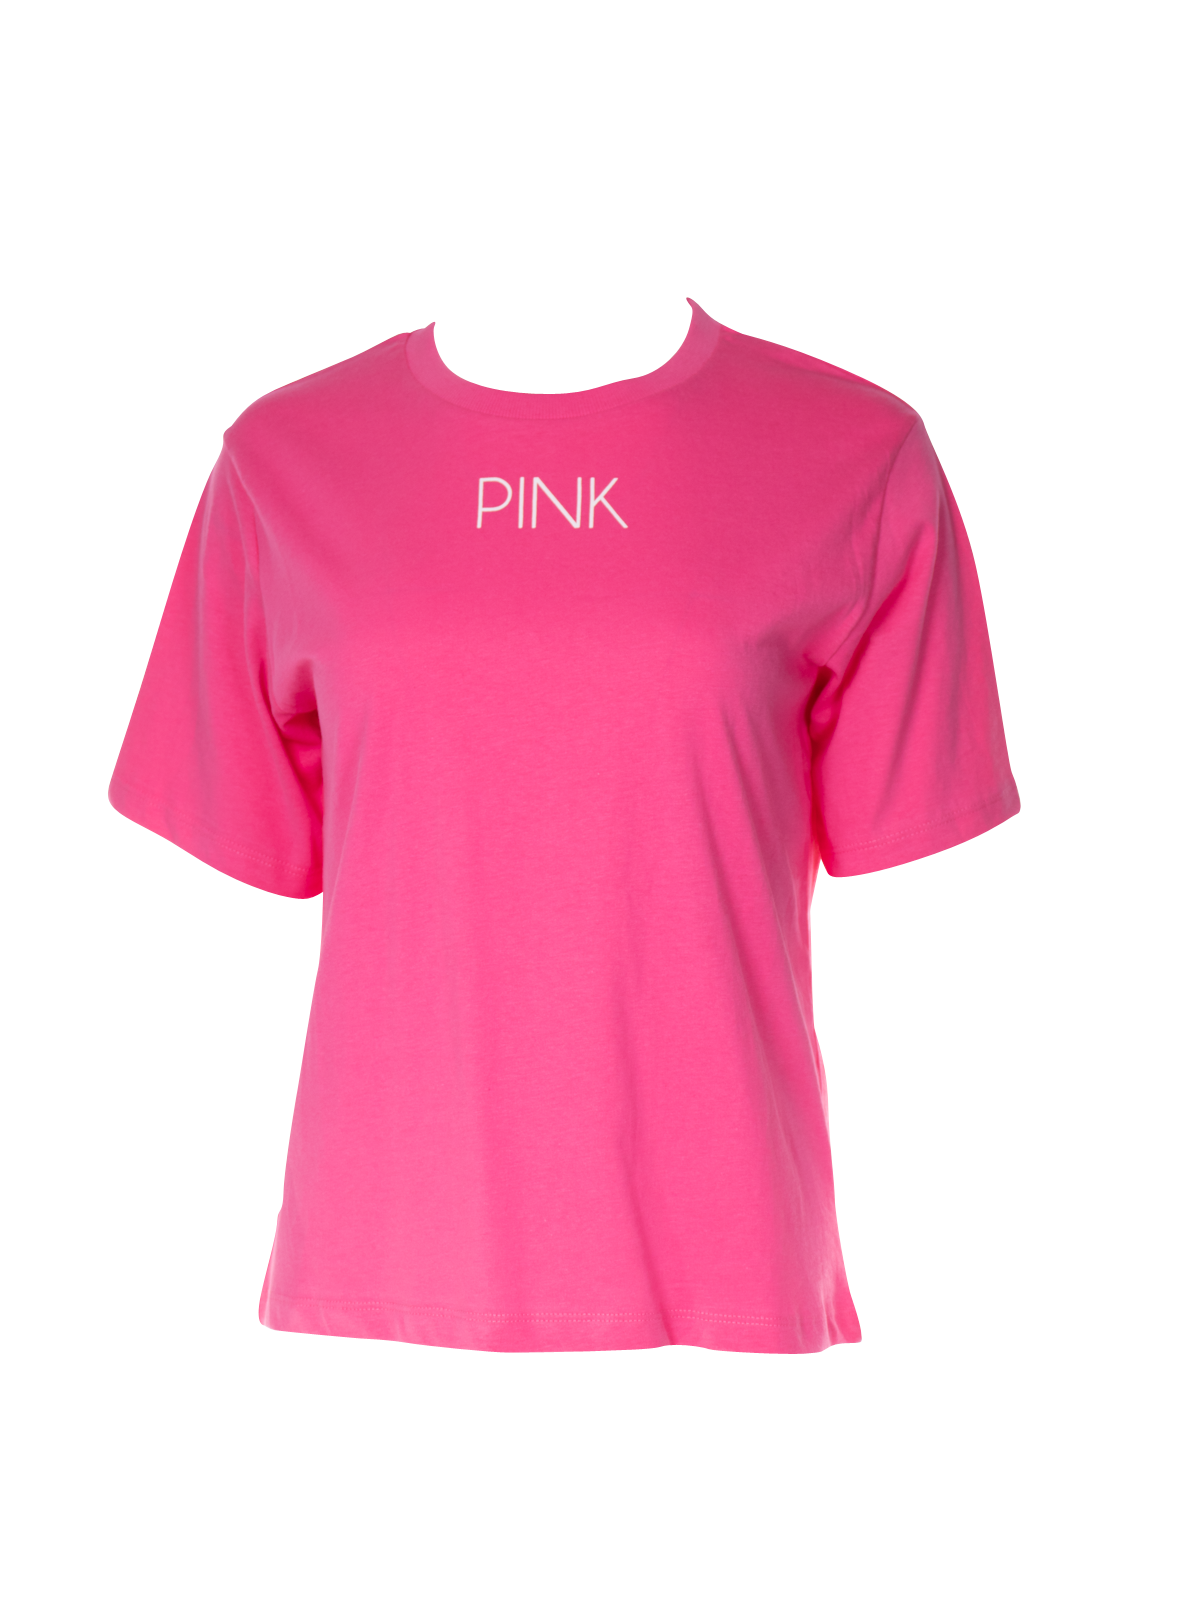 ga werken team Samenwerken met T-shirt print 'PINK' - BCI katoen kopen? - Wibra Nederland - Dat doe je  goed.